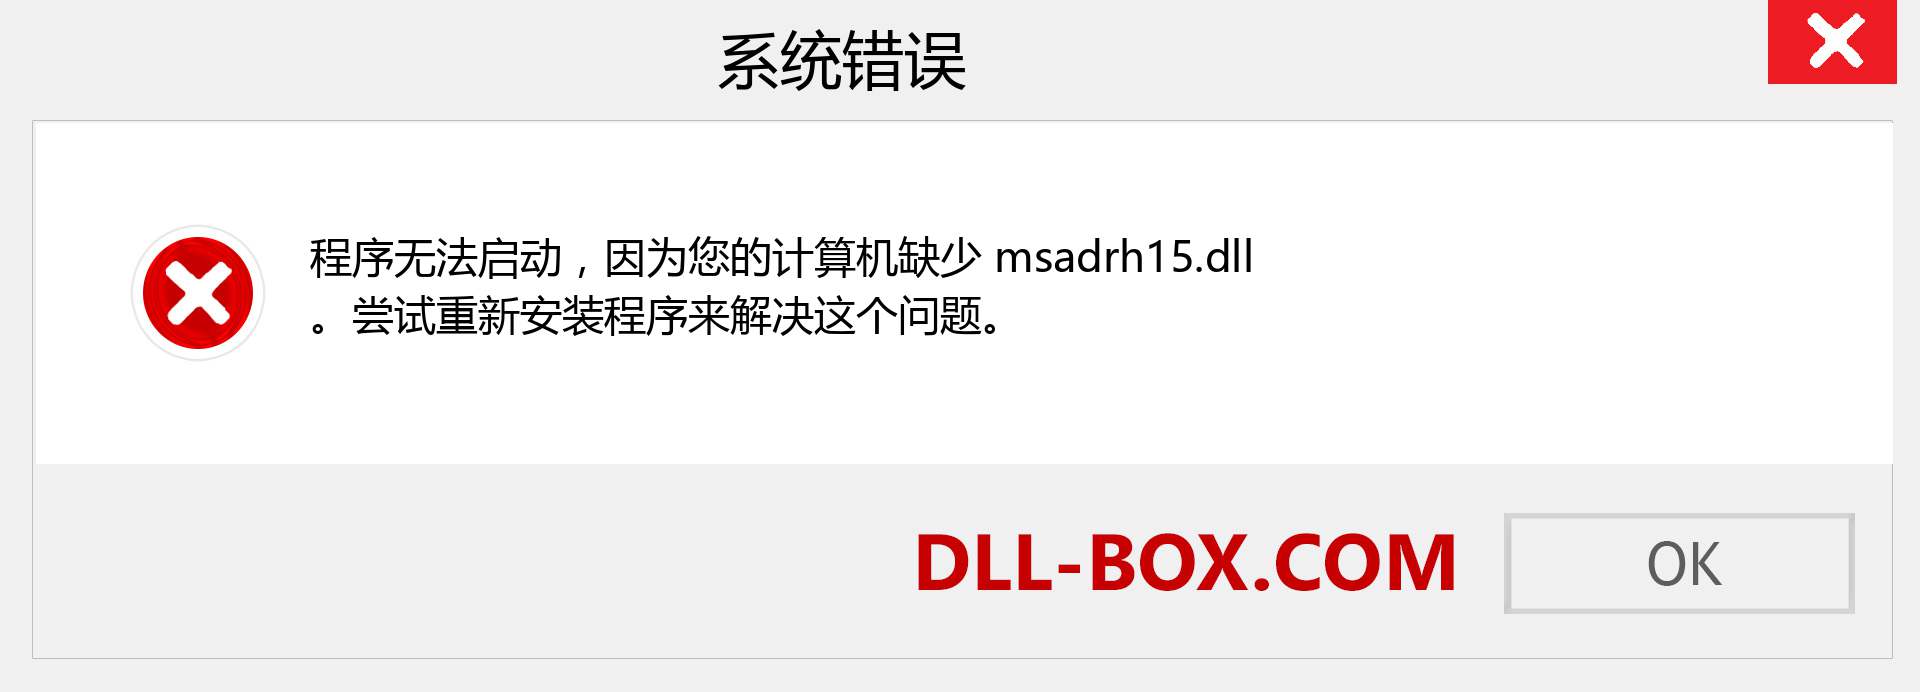 msadrh15.dll 文件丢失？。 适用于 Windows 7、8、10 的下载 - 修复 Windows、照片、图像上的 msadrh15 dll 丢失错误